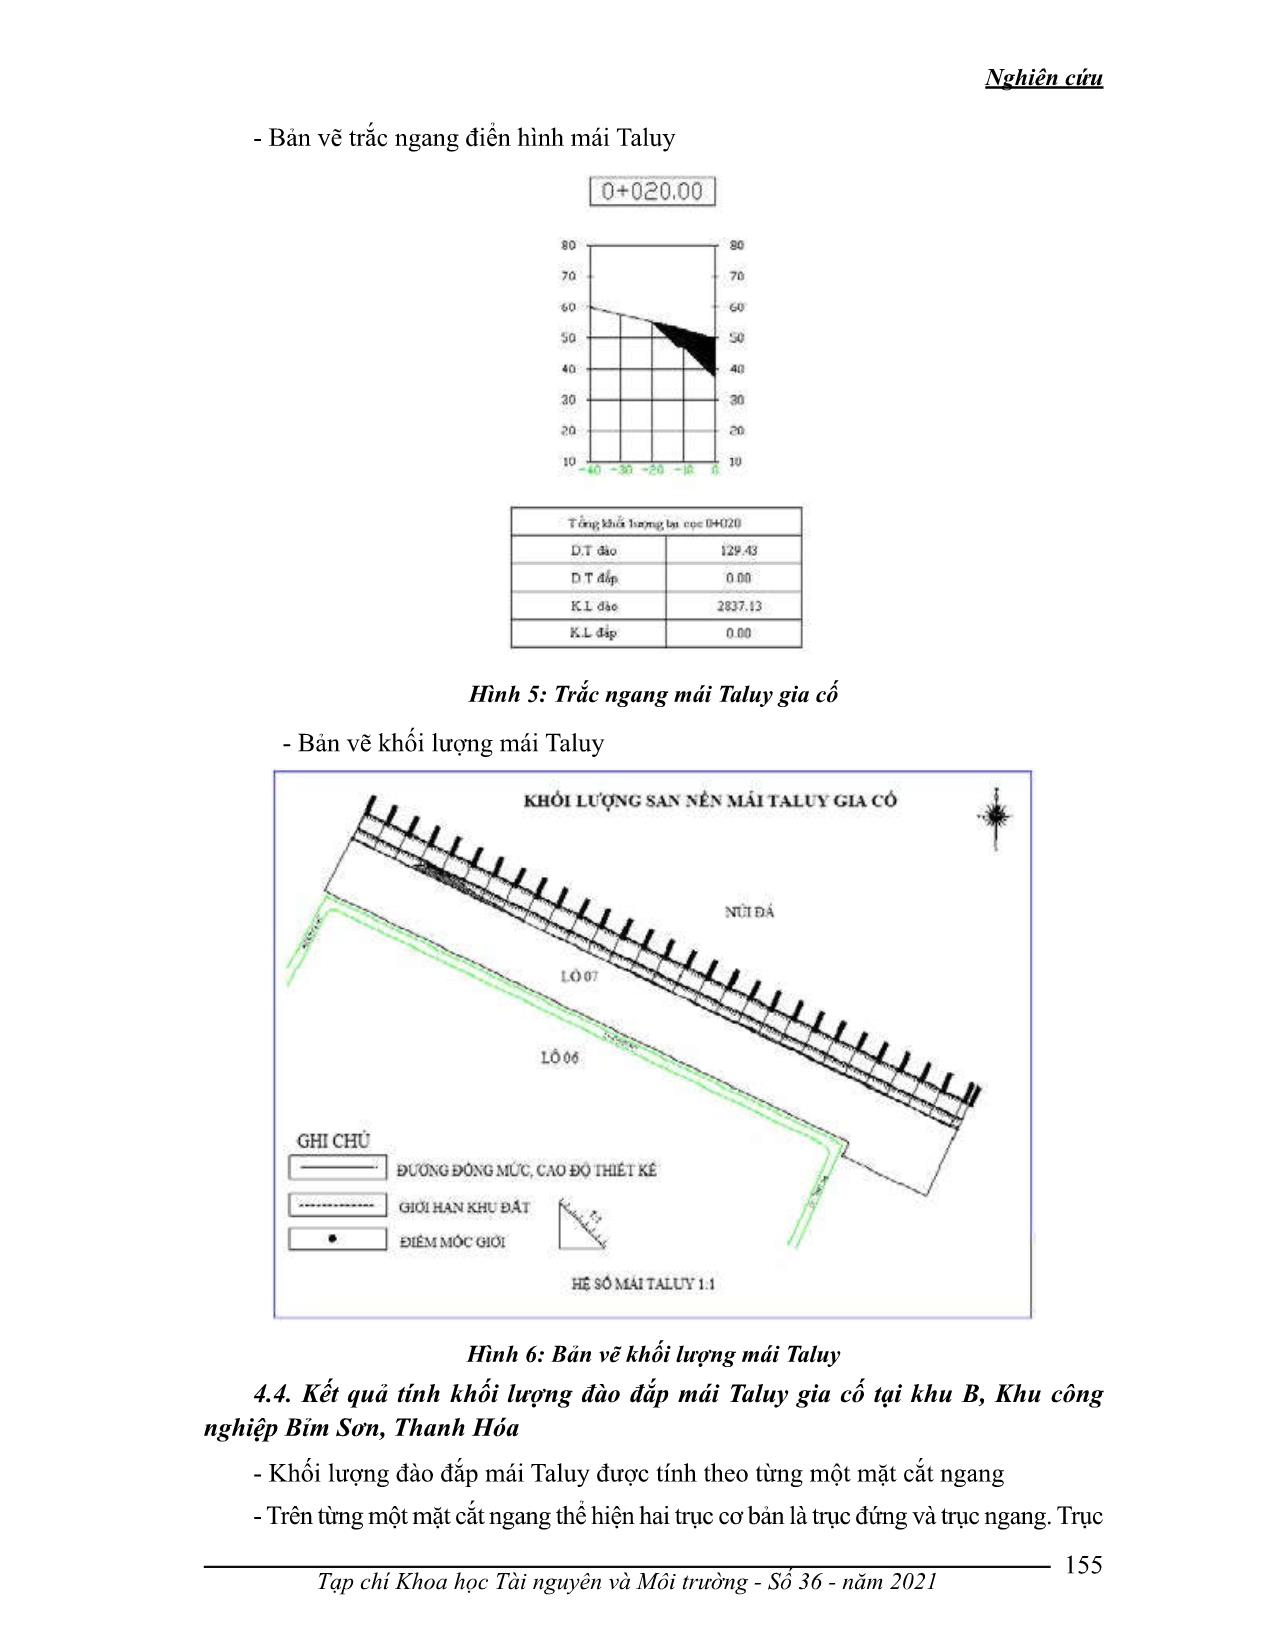 Xây dựng quy trình thiết kế, tính toán khói lượng đào đắp mái taluy gia cố tại khu B, khu công nghiệp Bỉm Sơn, Thanh Hóa trang 8